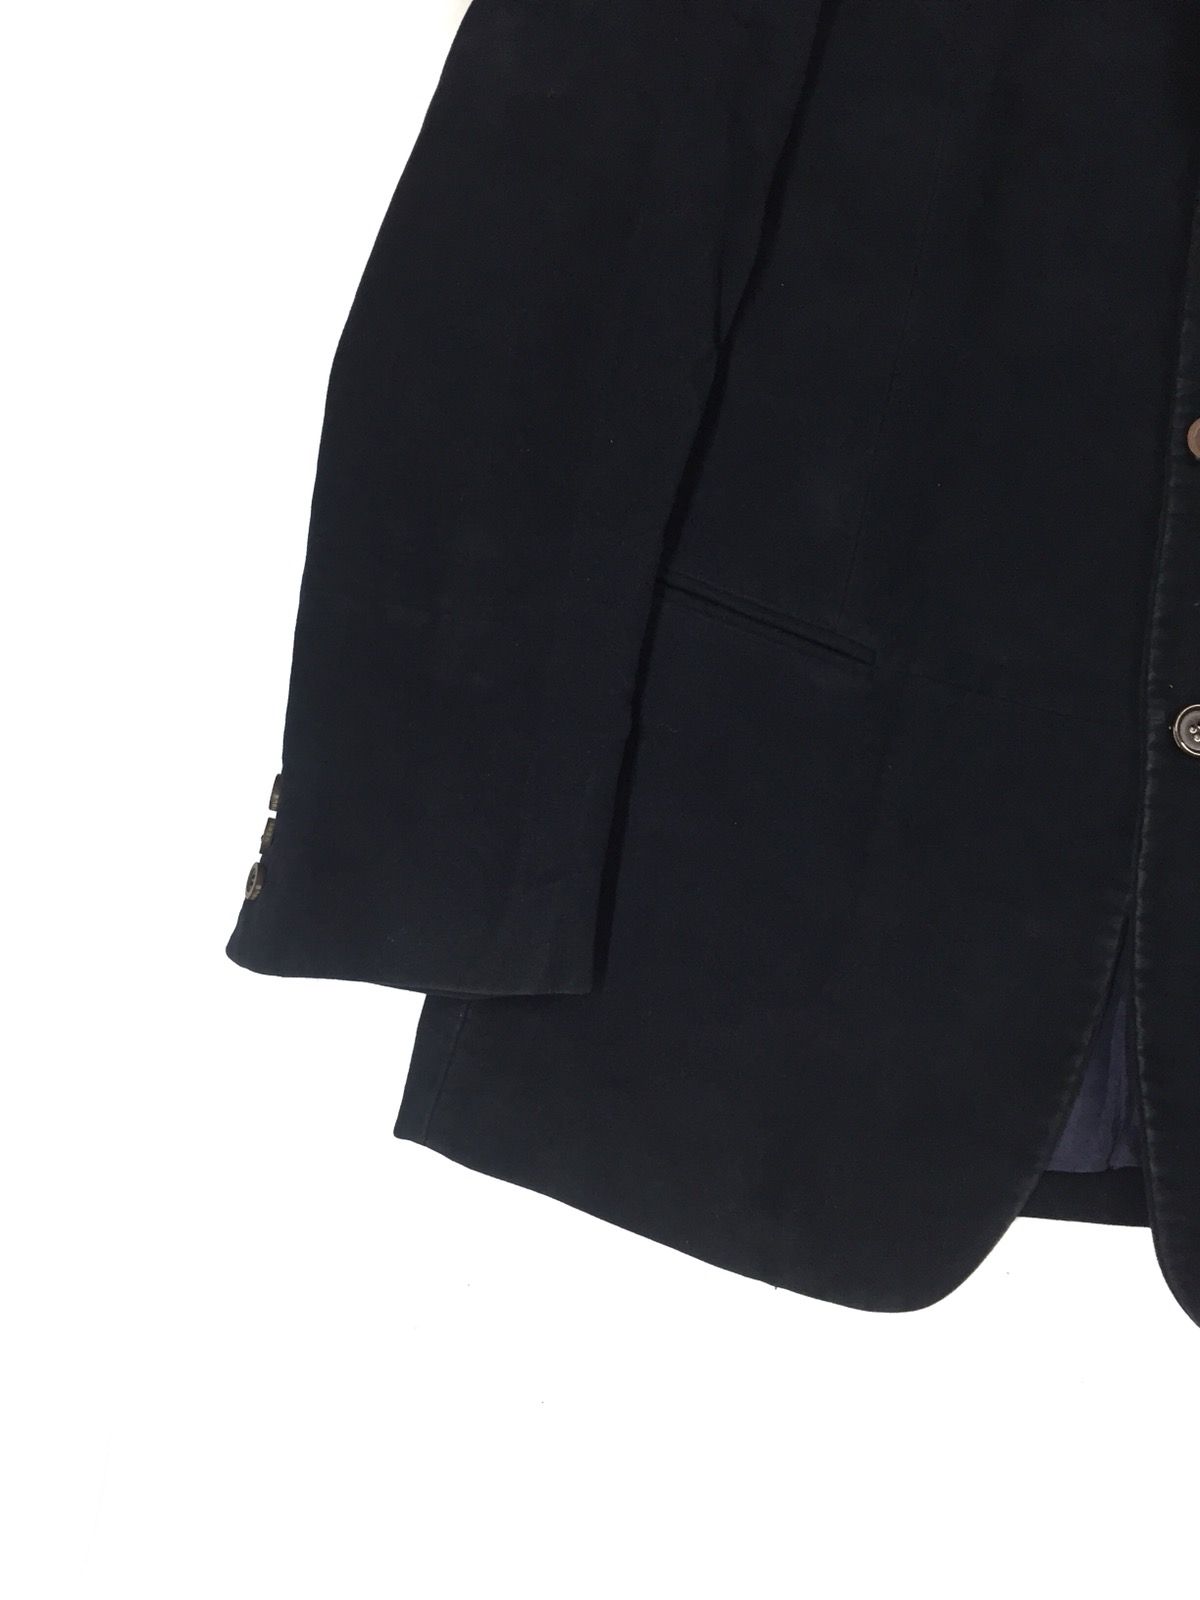 Versus Versace Velvet 3 Button Style Blazer Jacket - 7